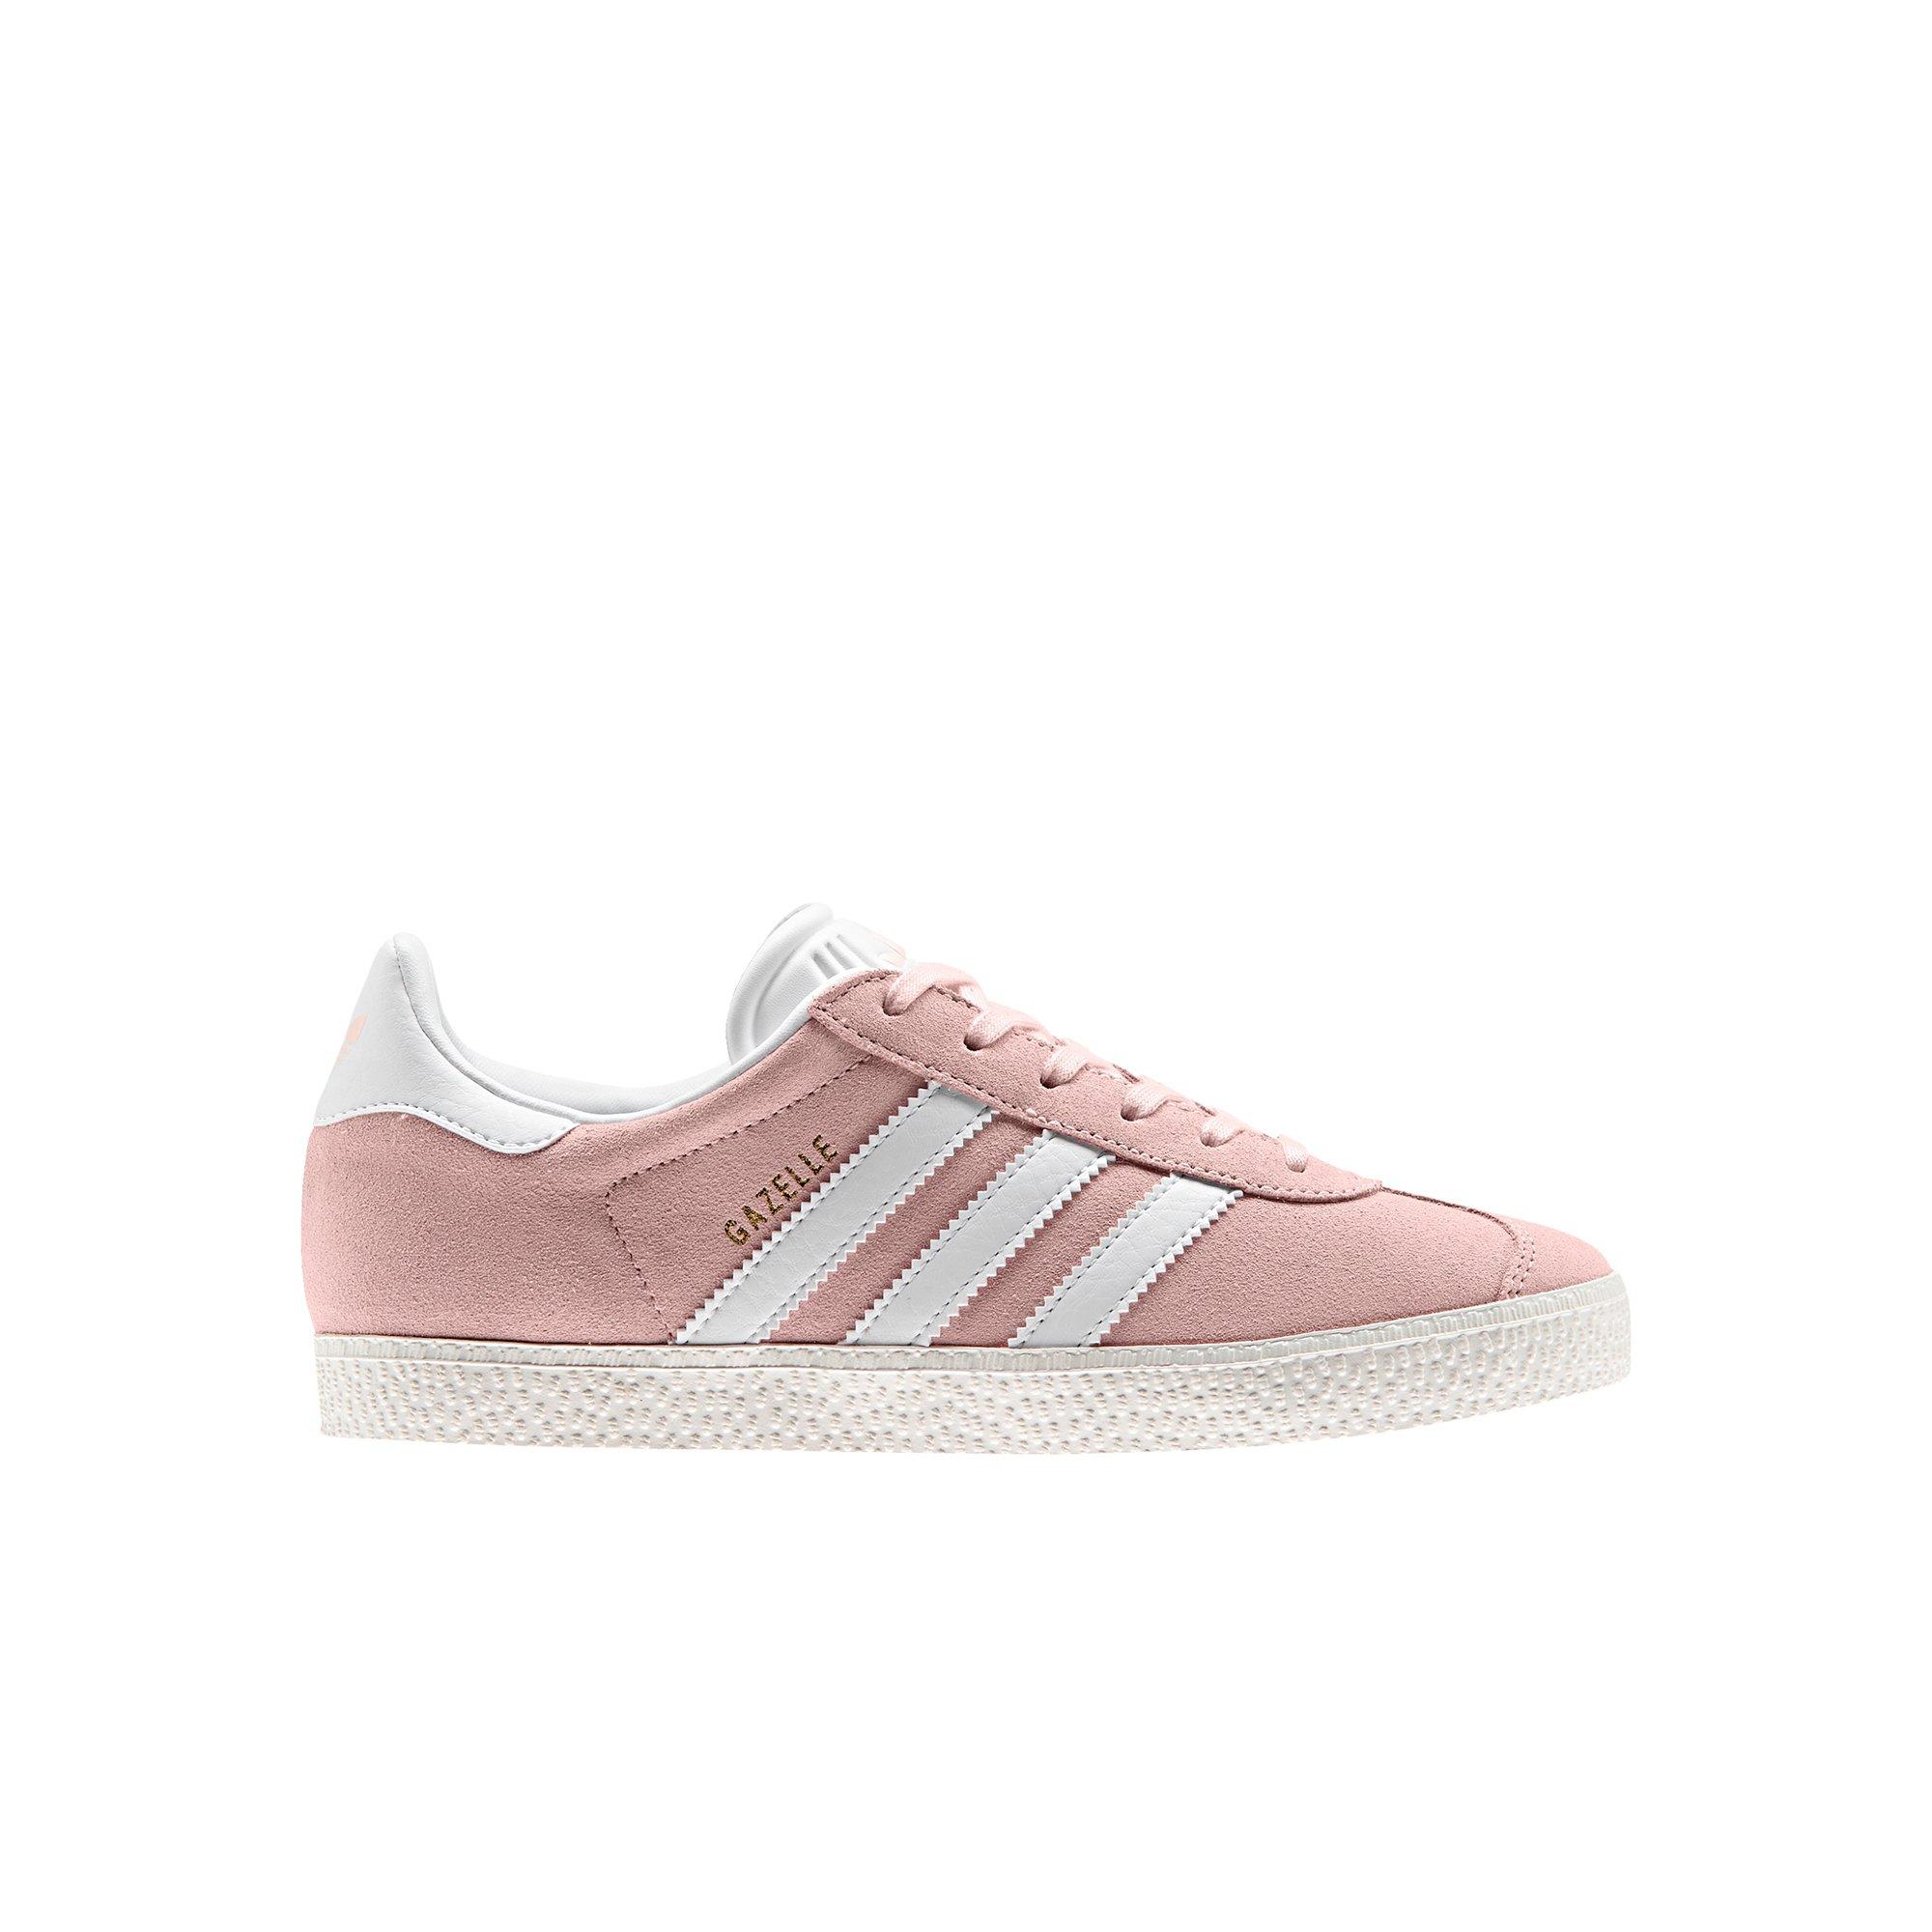 adidas gazelle childrens pink